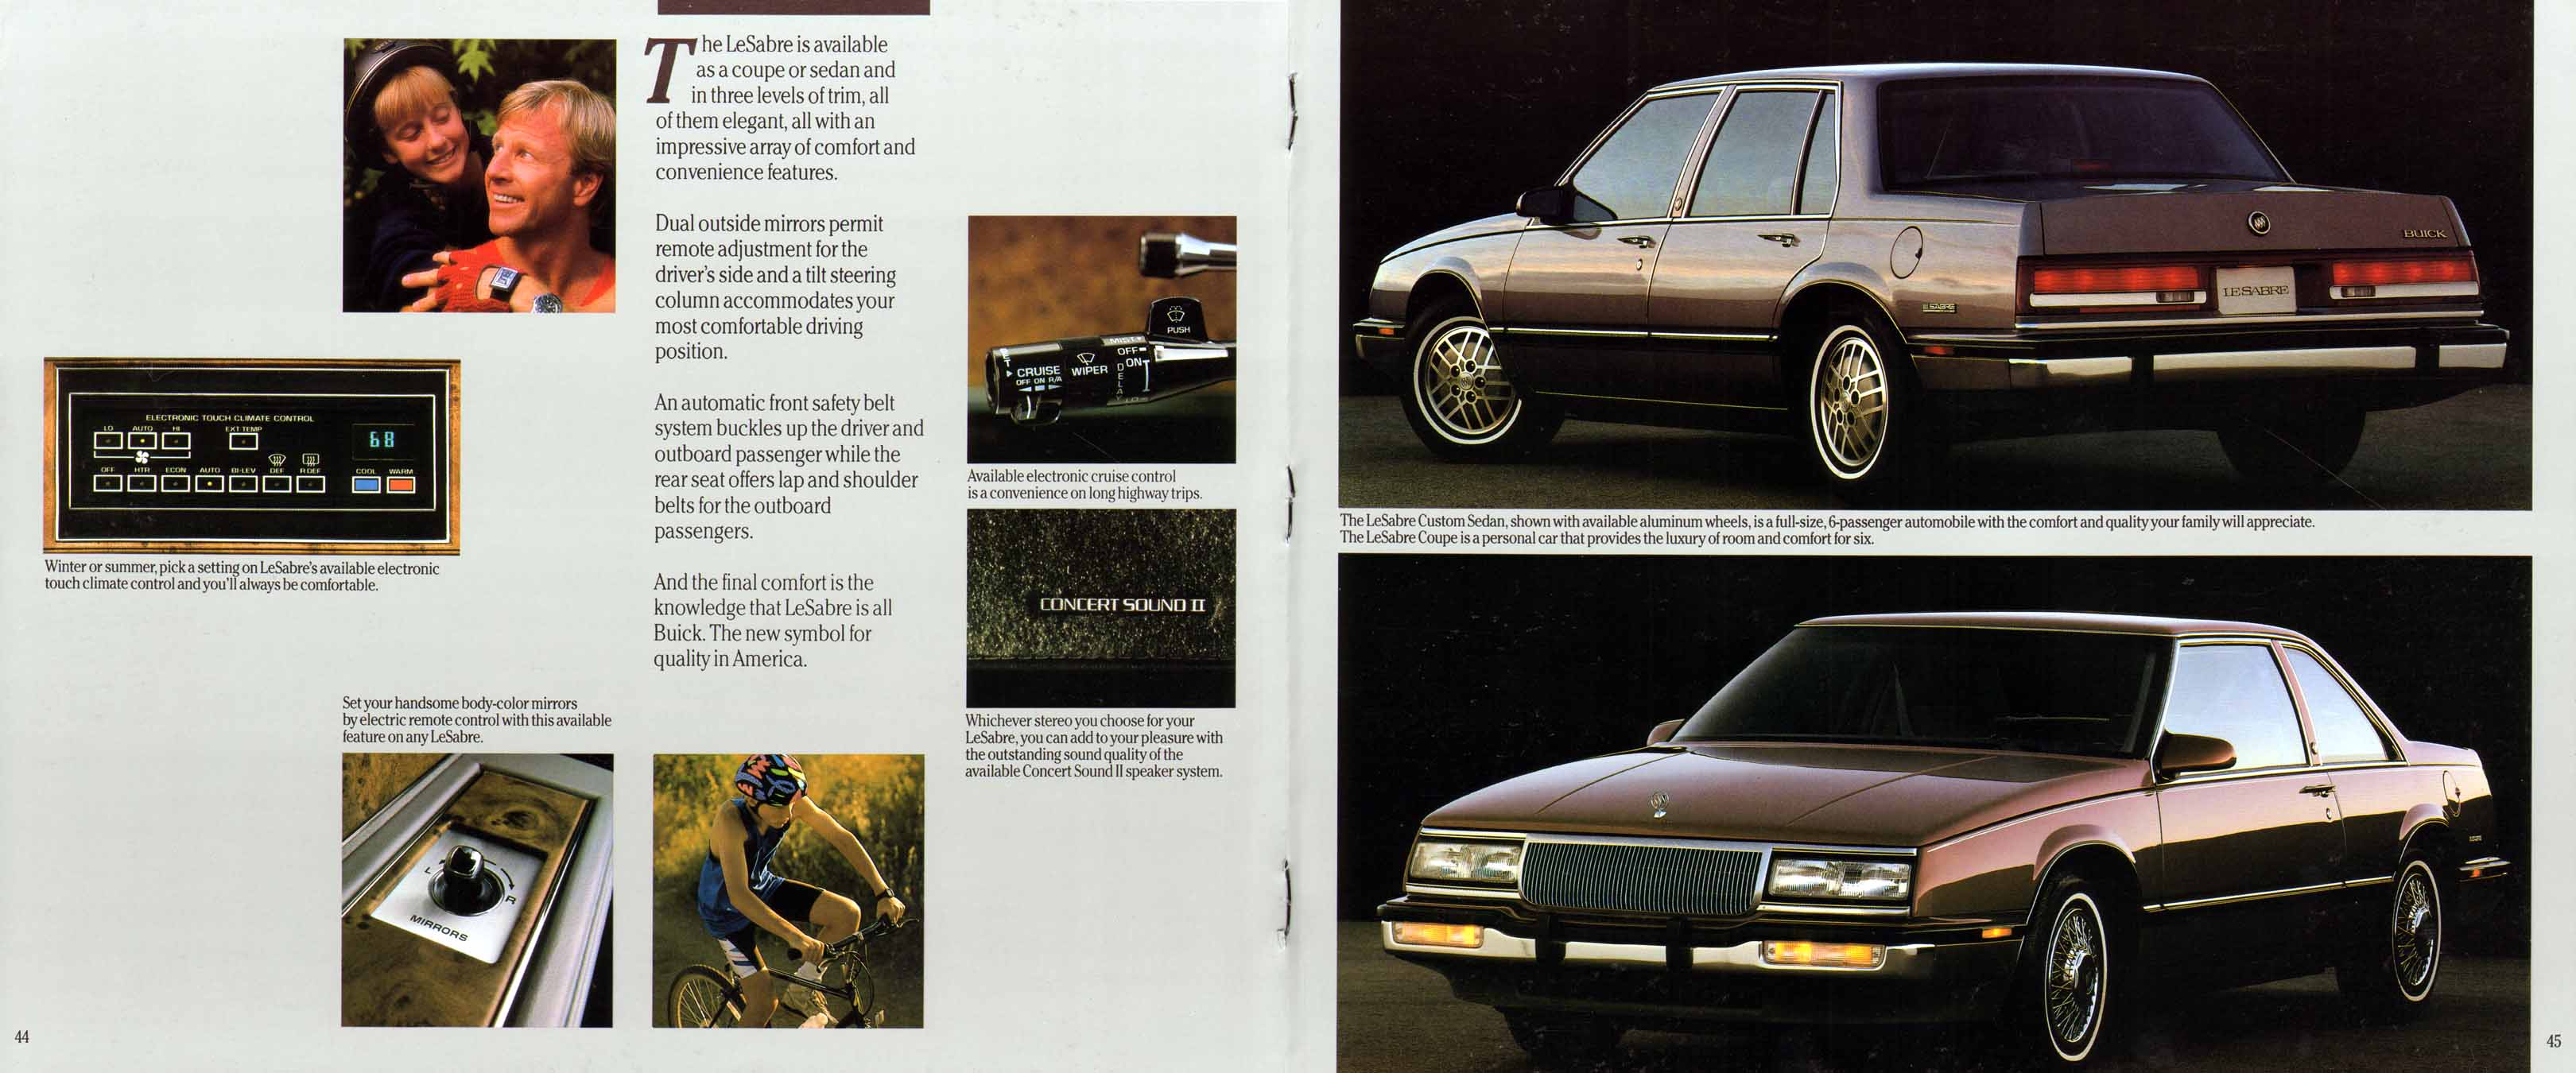 1991 Buick Full Line Prestige-46-47